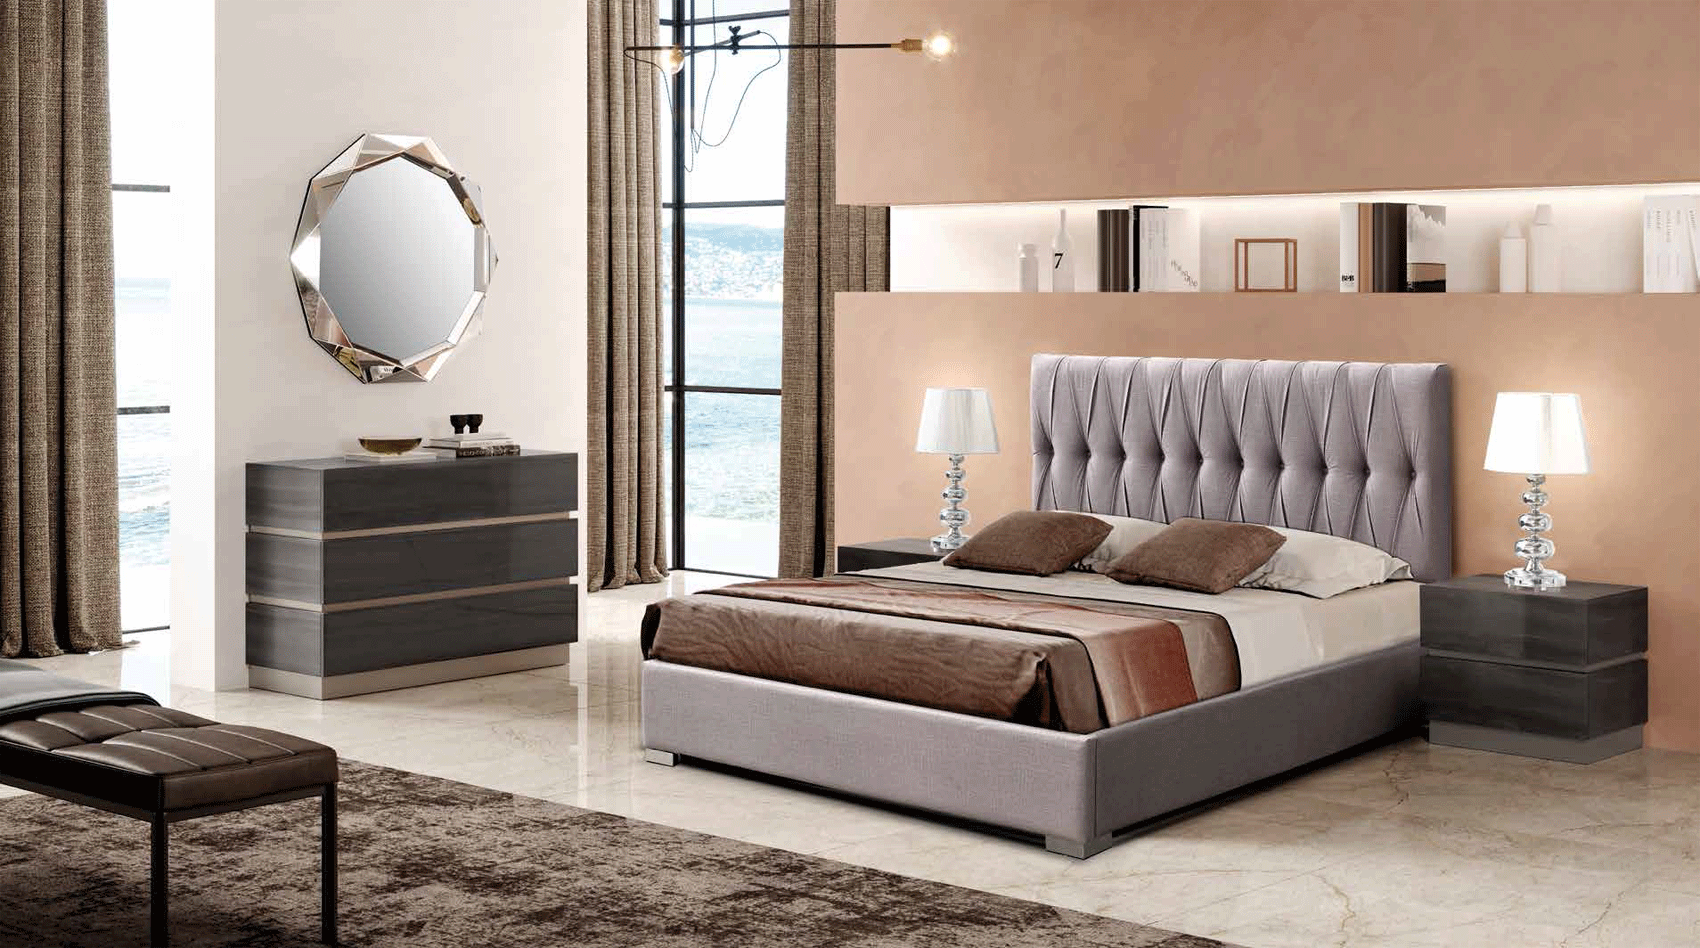 Bedroom Furniture Mattresses, Wooden Frames 401 Mulan, M-151, C-151, E-413, YP440-N